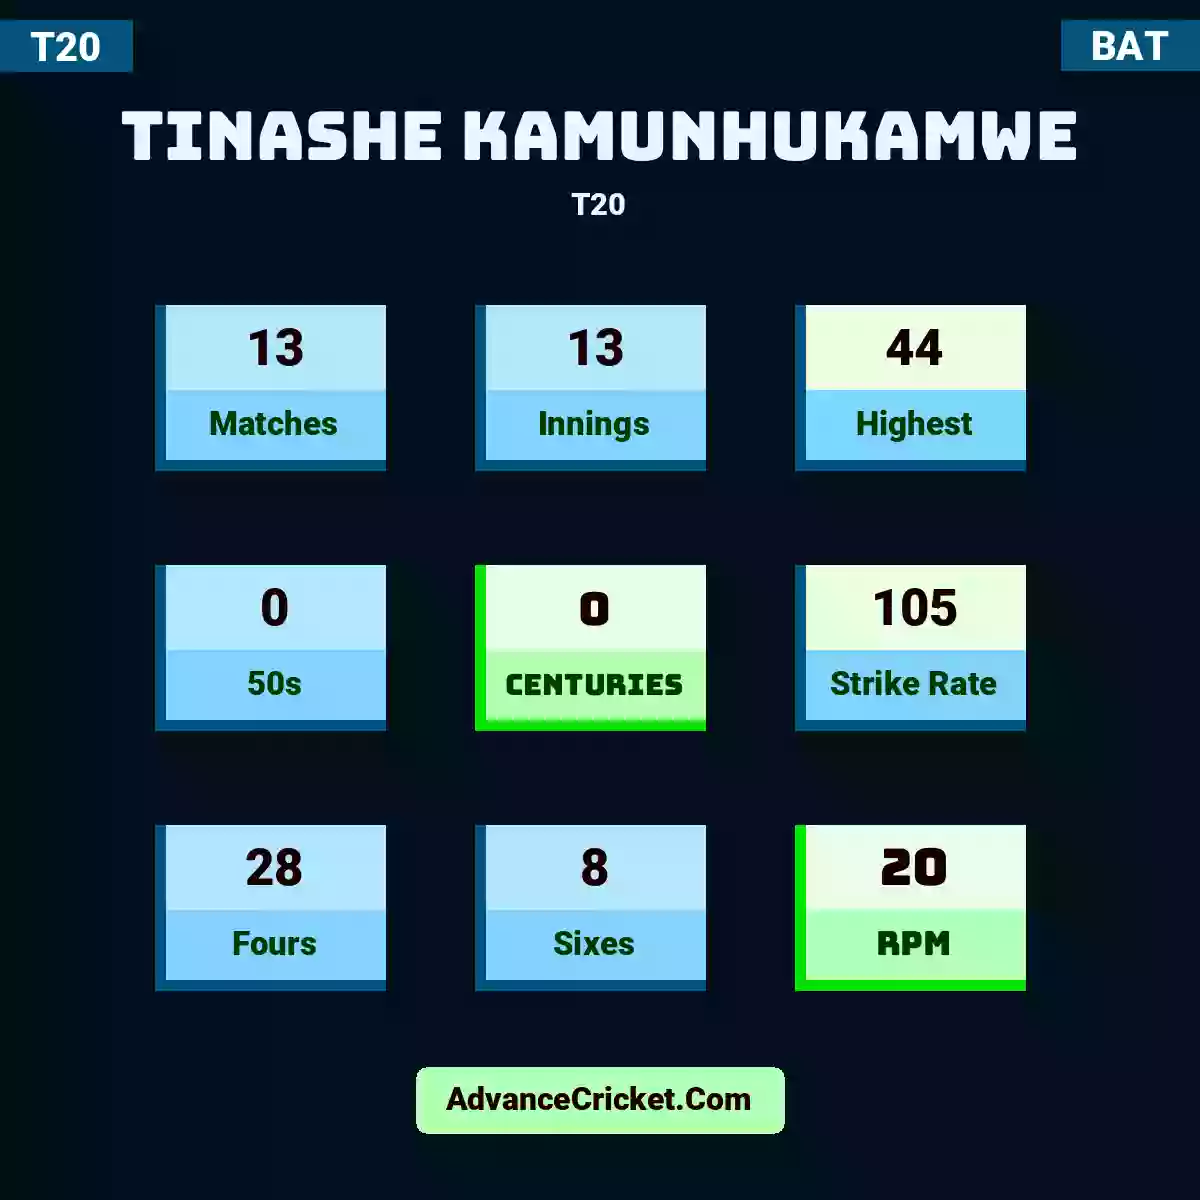 Tinashe Kamunhukamwe T20 , Tinashe Kamunhukamwe played 13 matches, scored 44 runs as highest, 0 half-centuries, and 0 centuries, with a strike rate of 105. T.Kamunhukamwe hit 28 fours and 8 sixes, with an RPM of 20.